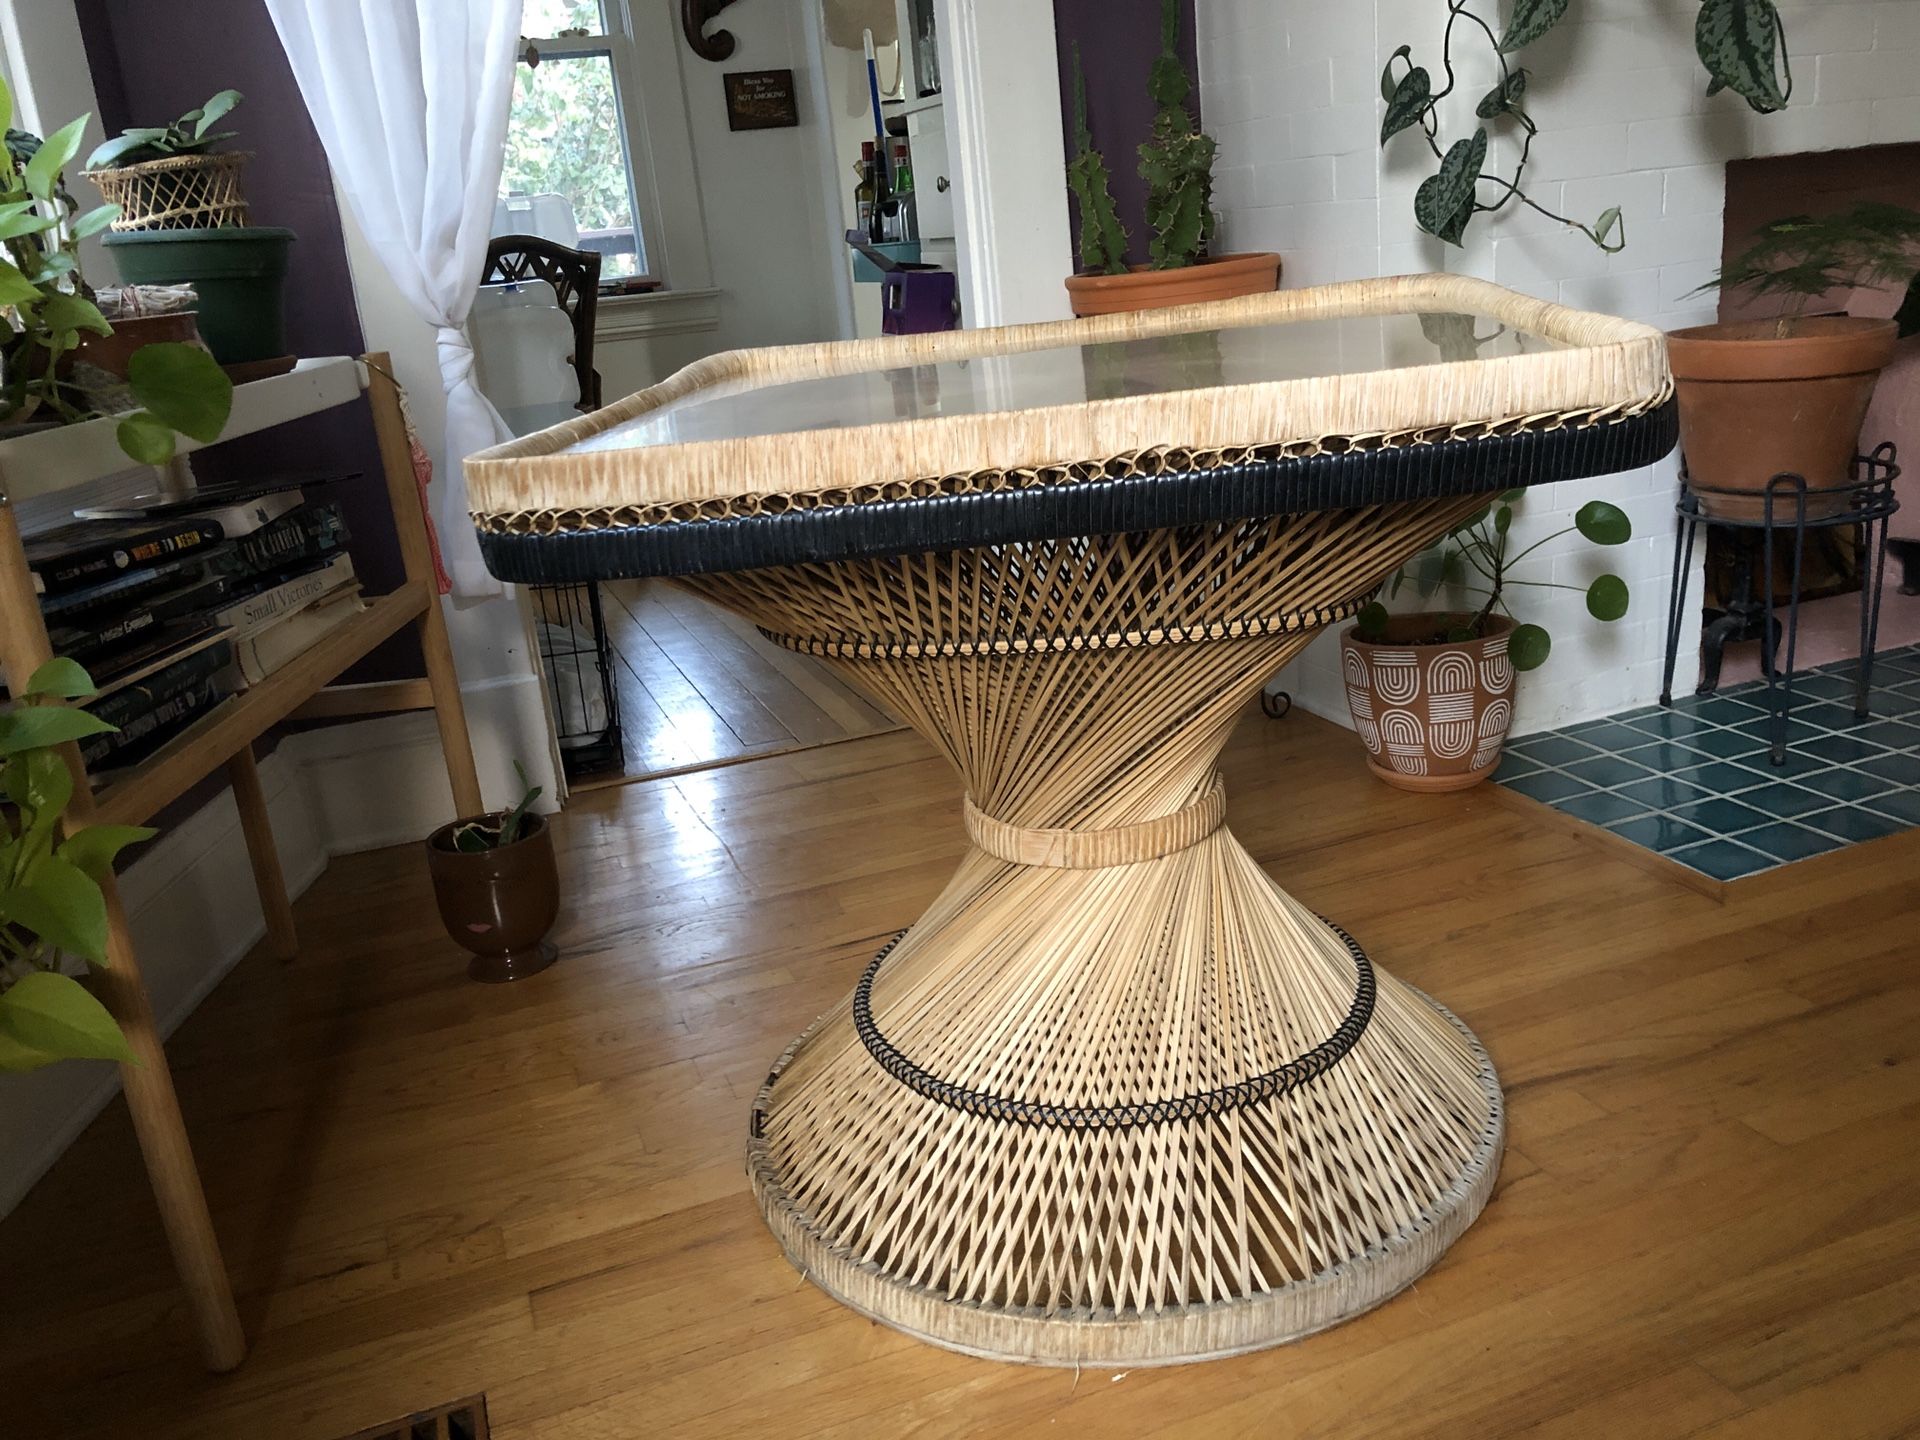 Wicker/rattan table